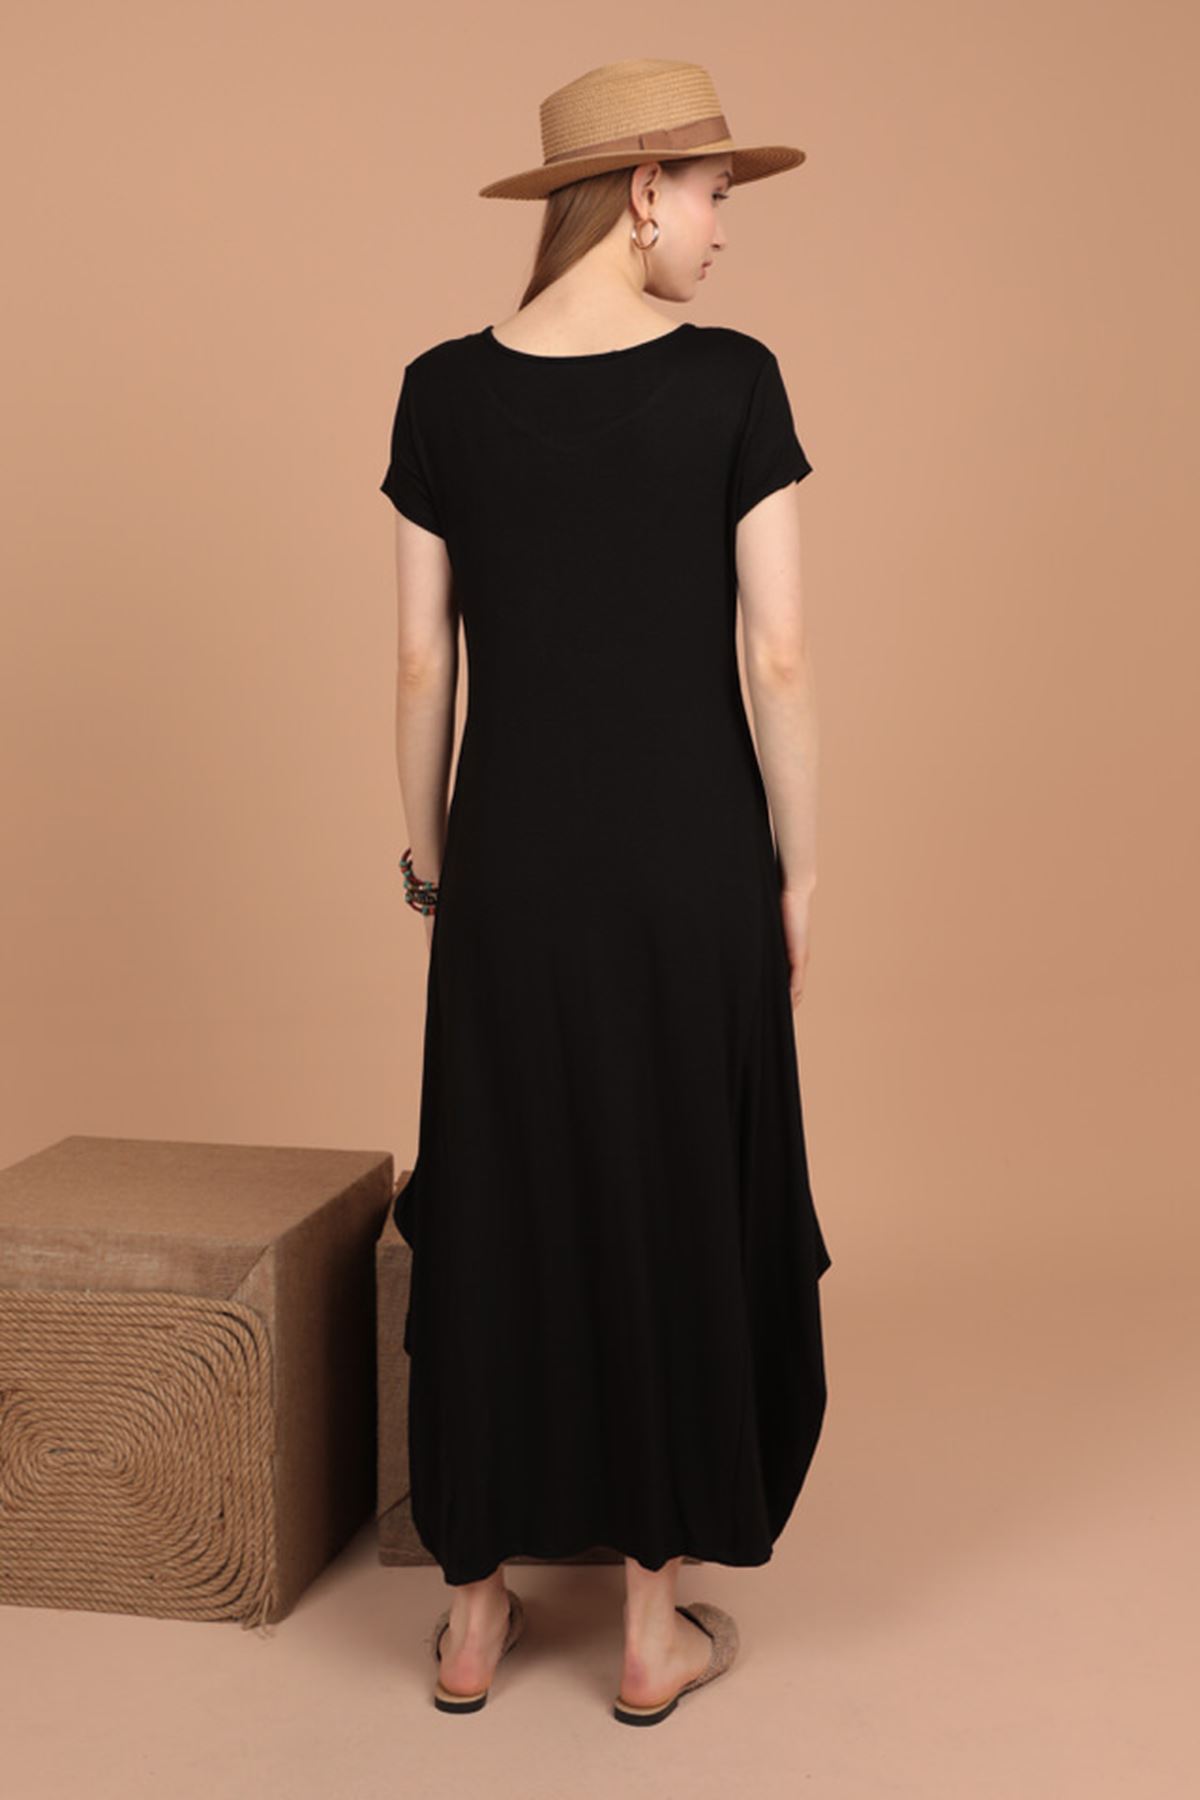 Toptan Viskon Örme Kumaş Baskılı Kadın Elbise-Siyah